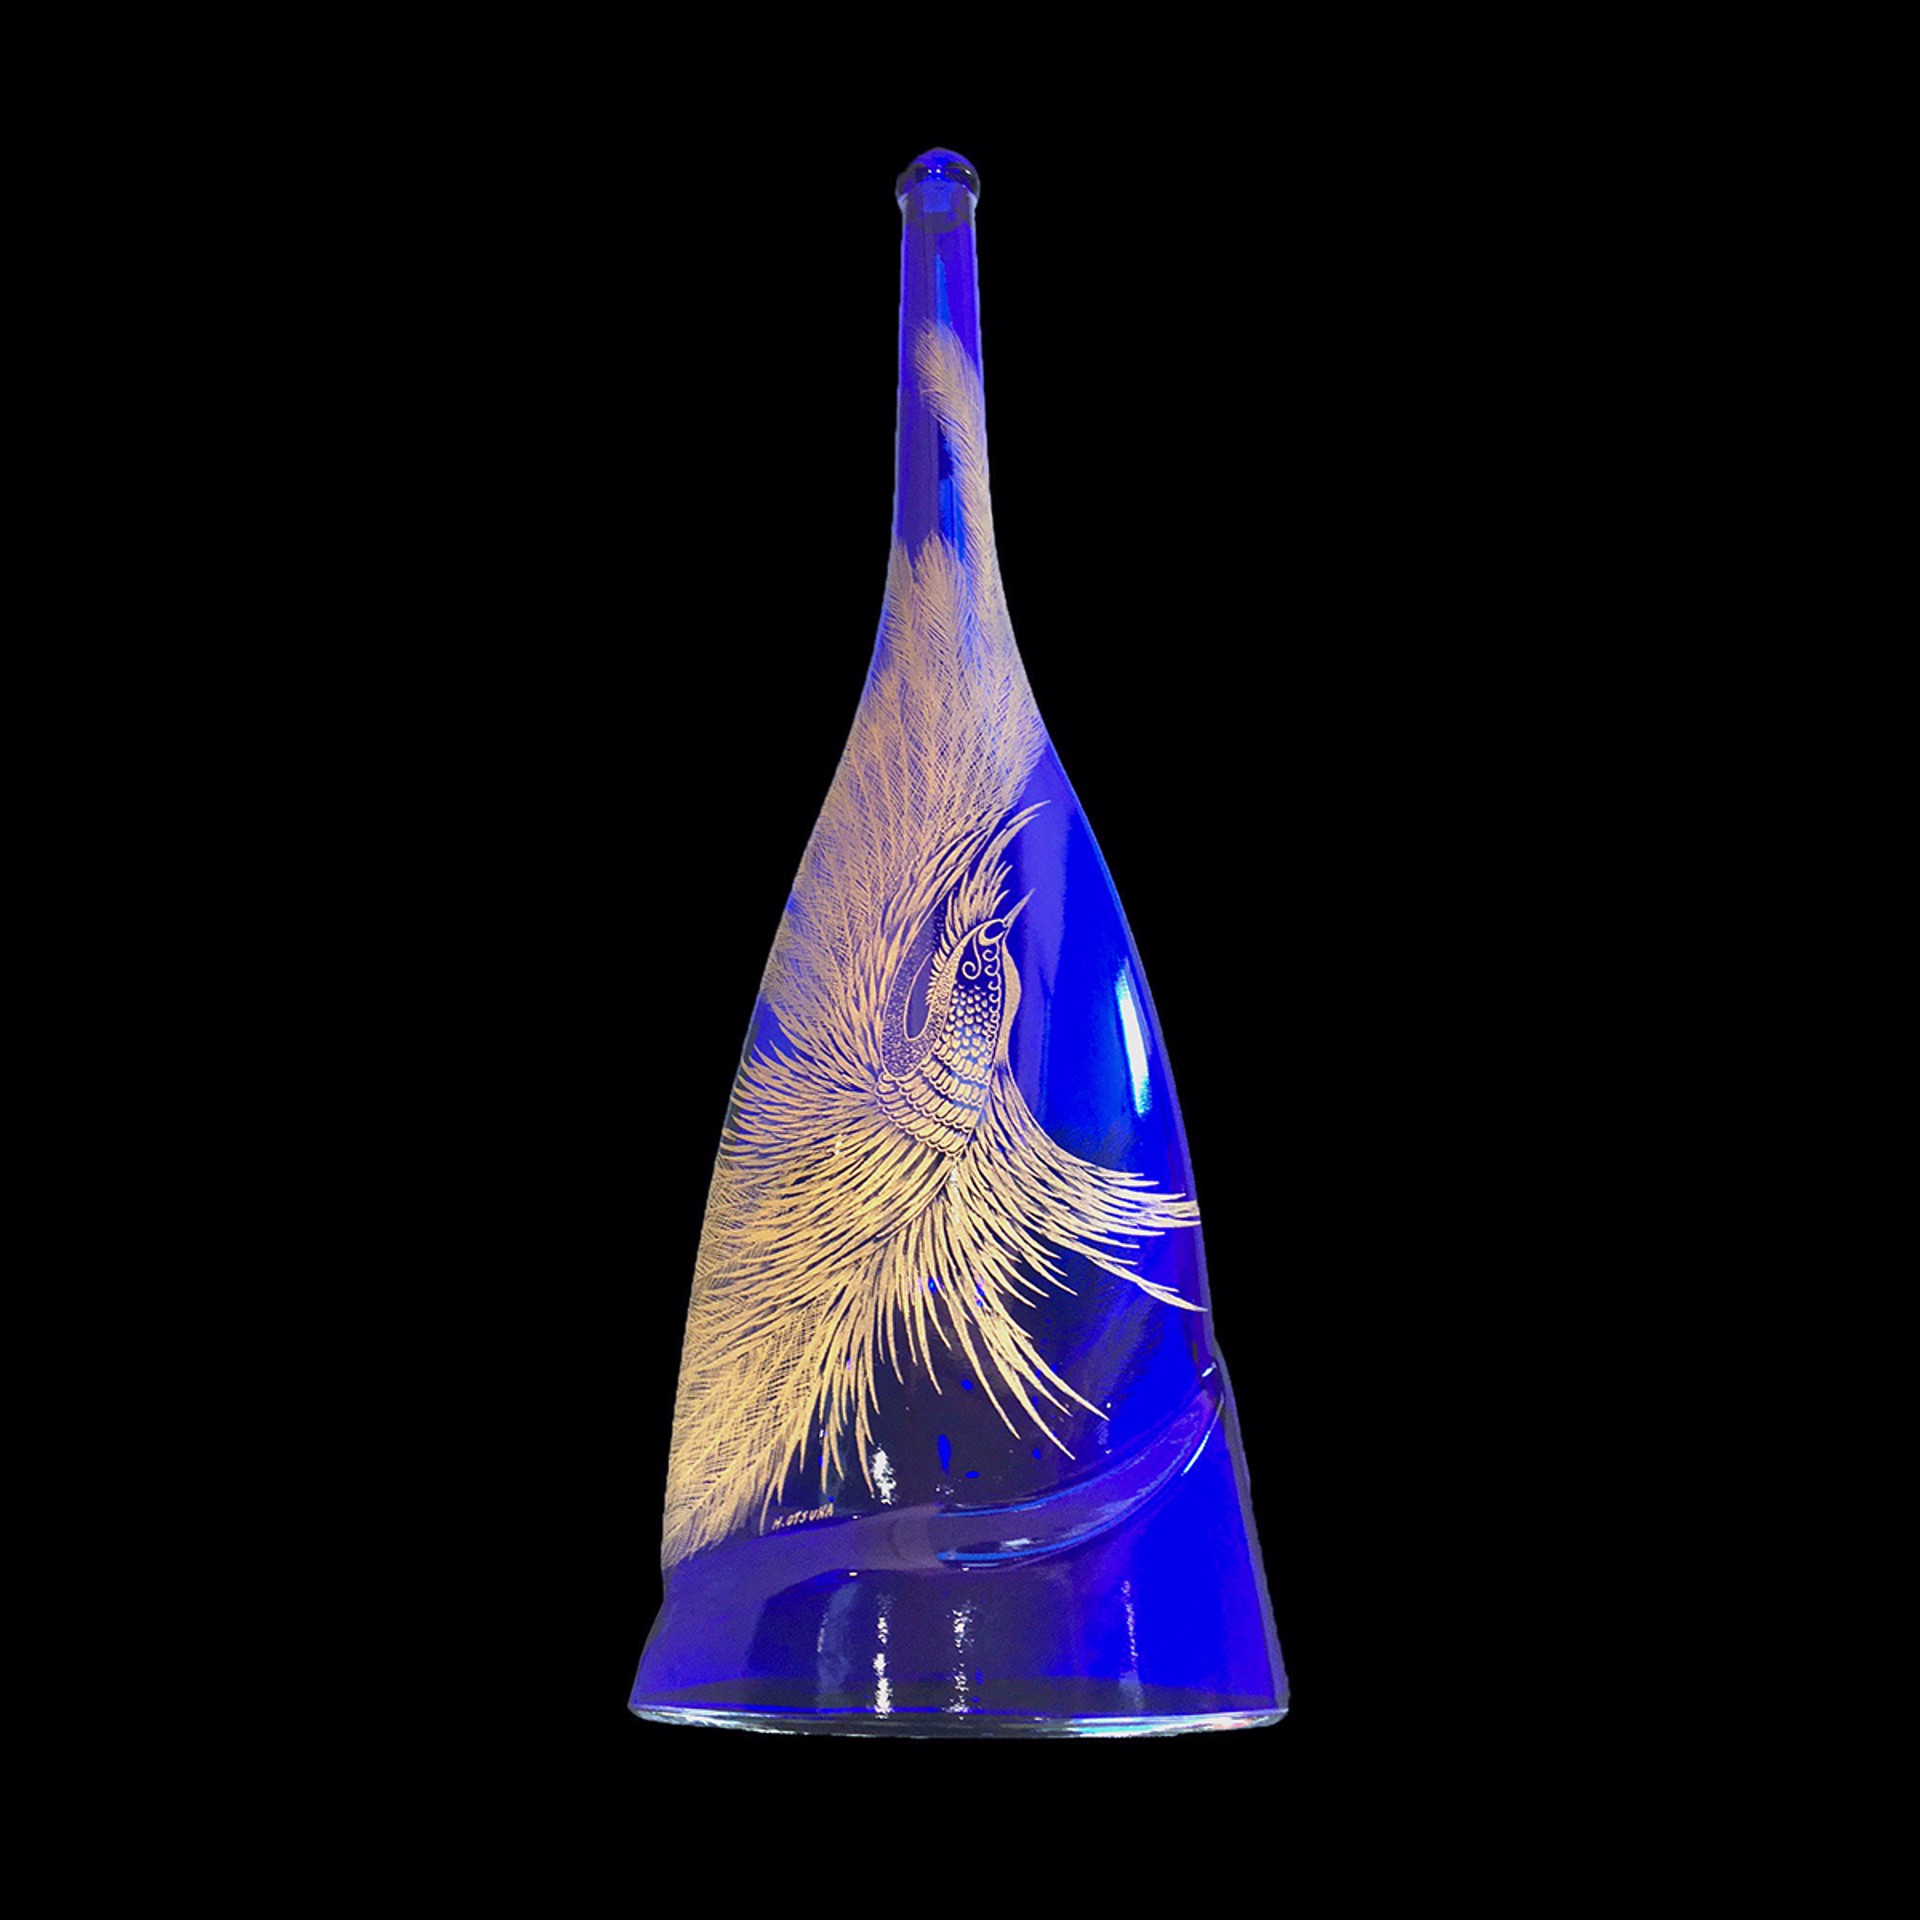 Fantasy Bird Series - The Flight - Glass Etching on Vase by Hisashi Otsuka